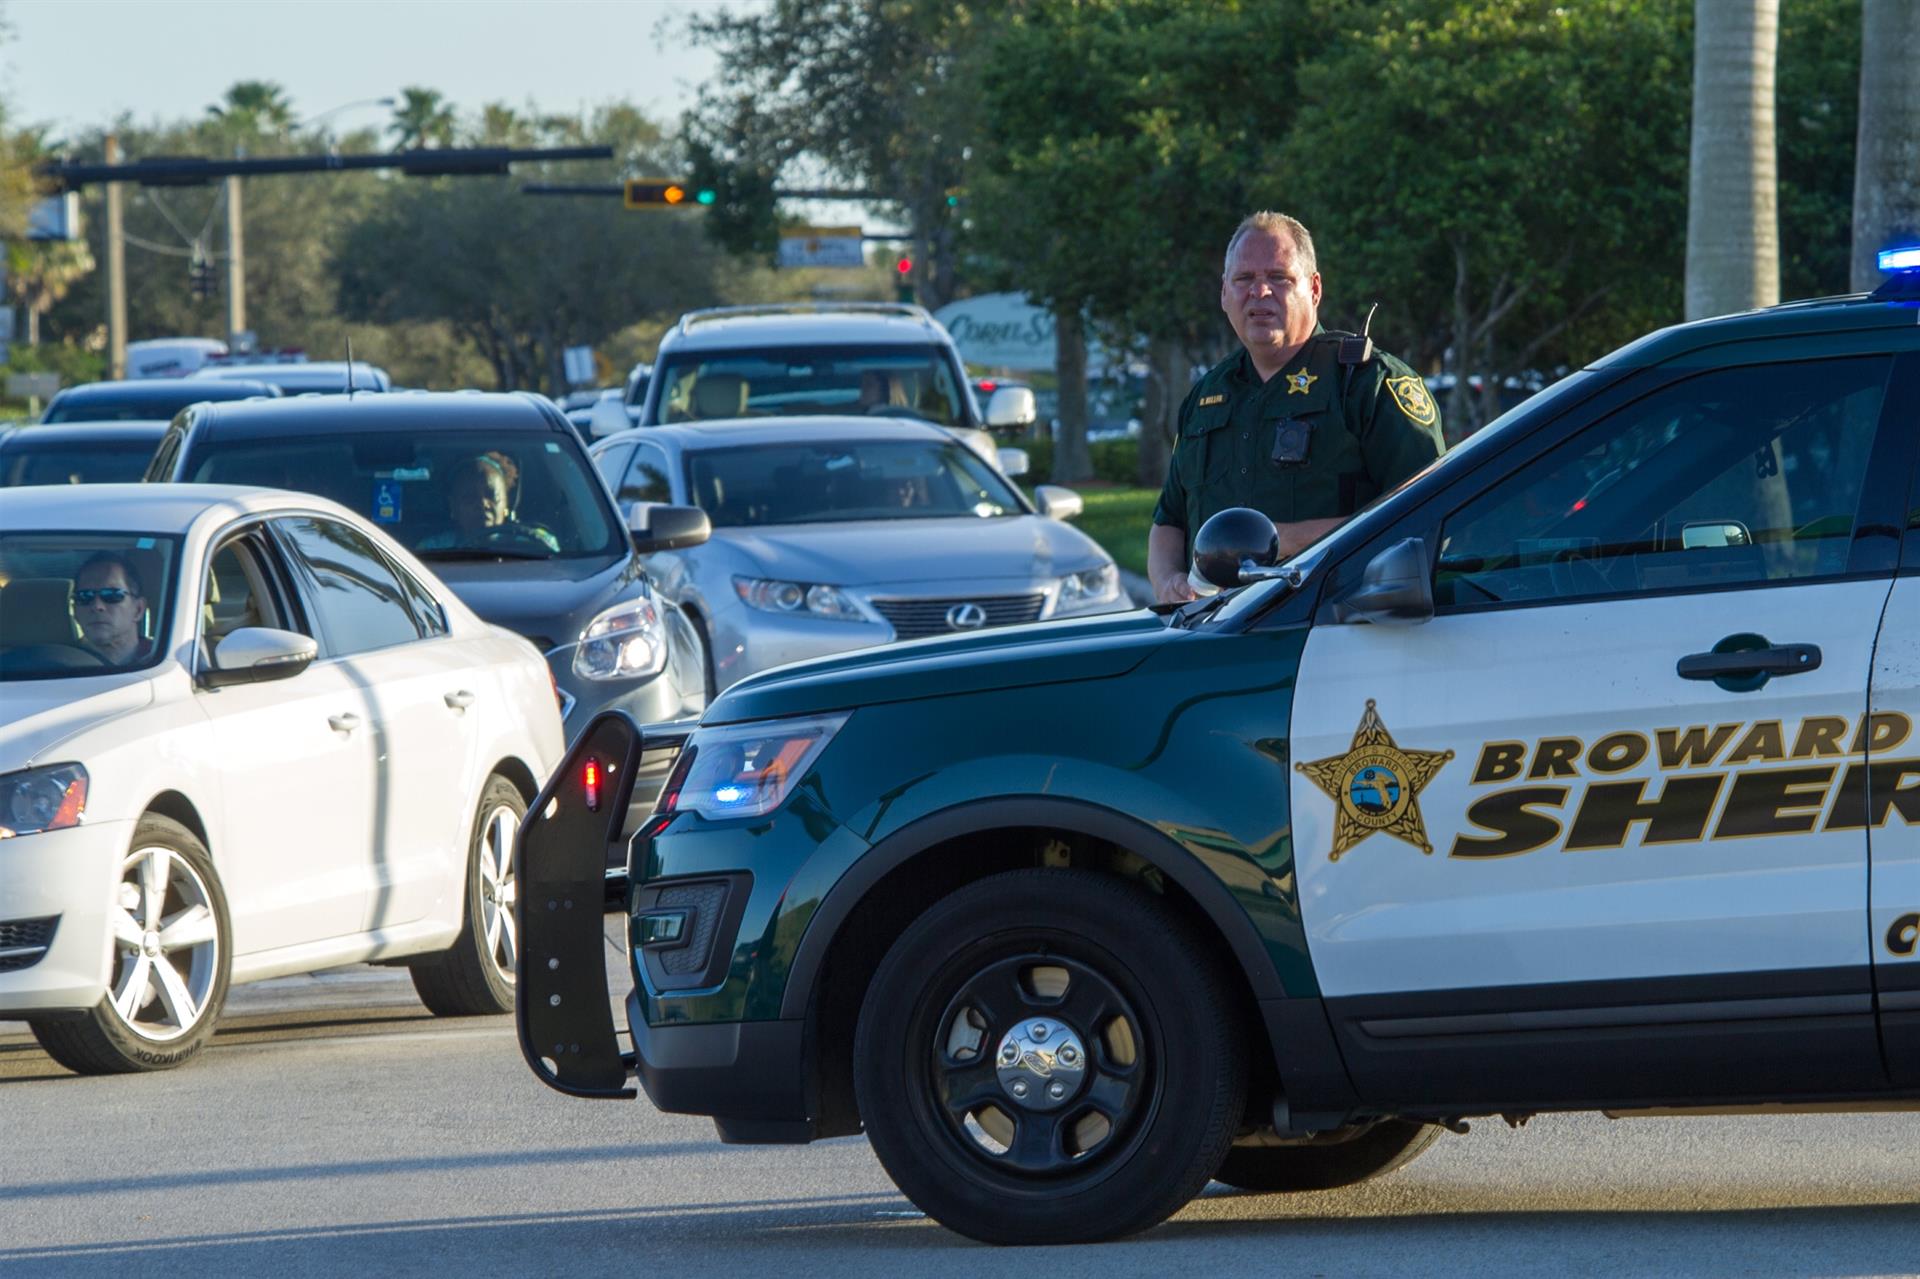 El ayudante del sheriff del Condado Broward monta guardia tras el tiroteo registrado en la escuela secundaria Marjory Stoneman Douglas de la ciudad de Parkland, en el sureste de Florida (Estados Unidos). Imagen de archivo. EFE/GIORGIO VIERA
